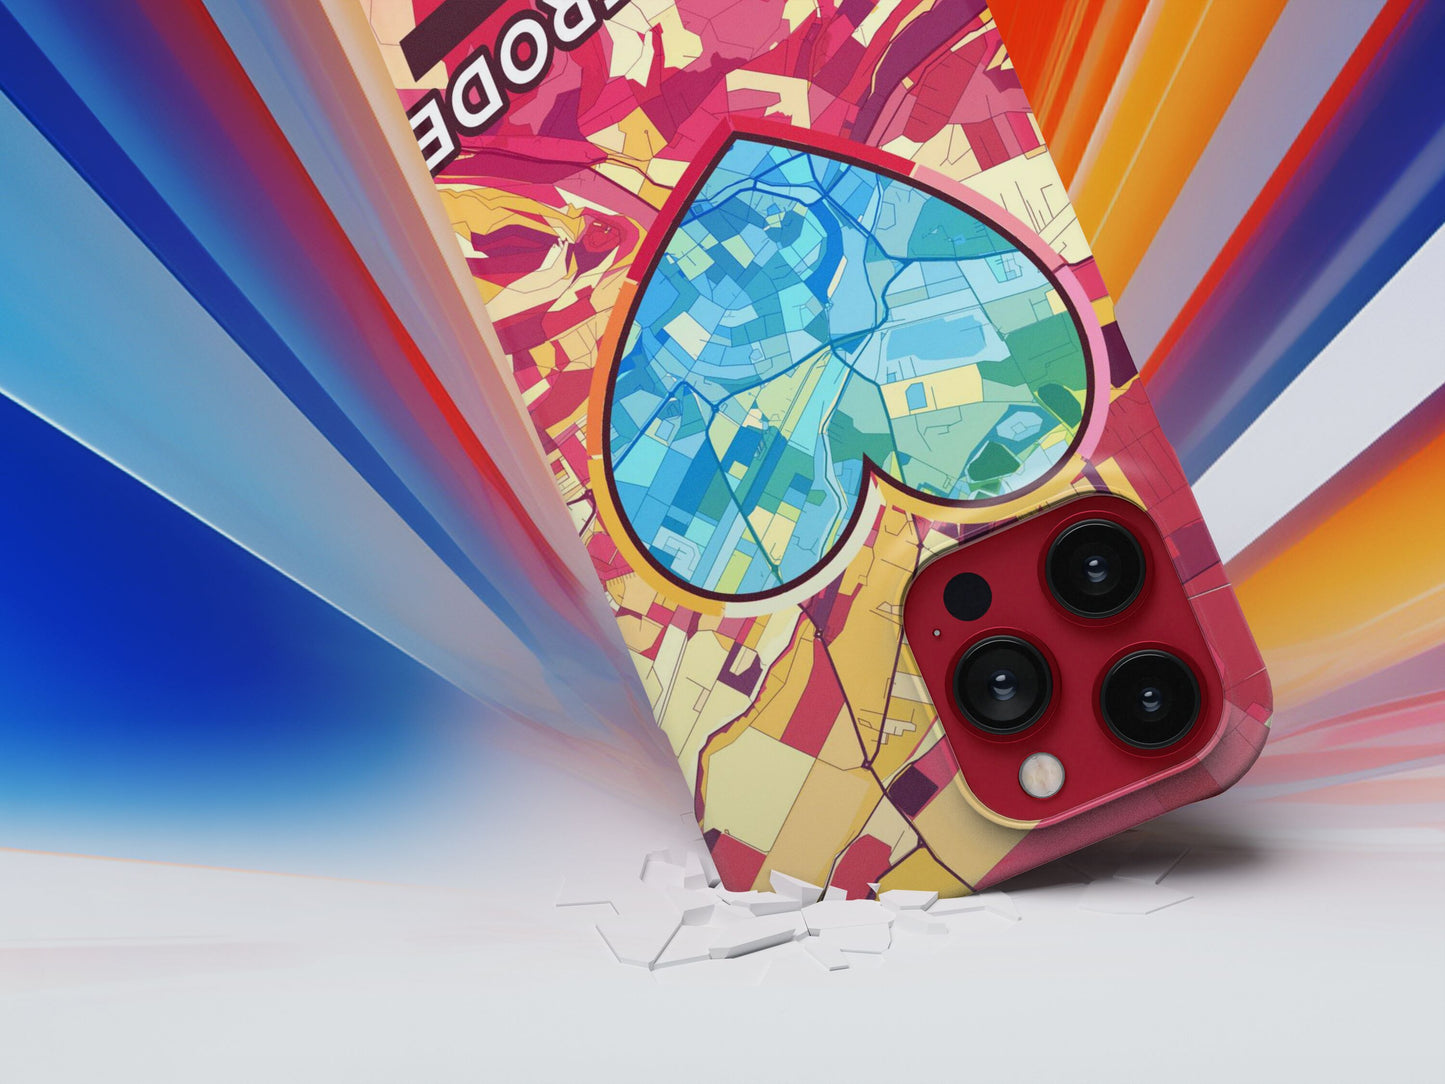 Wernigerode Deutschland slim phone case with colorful icon